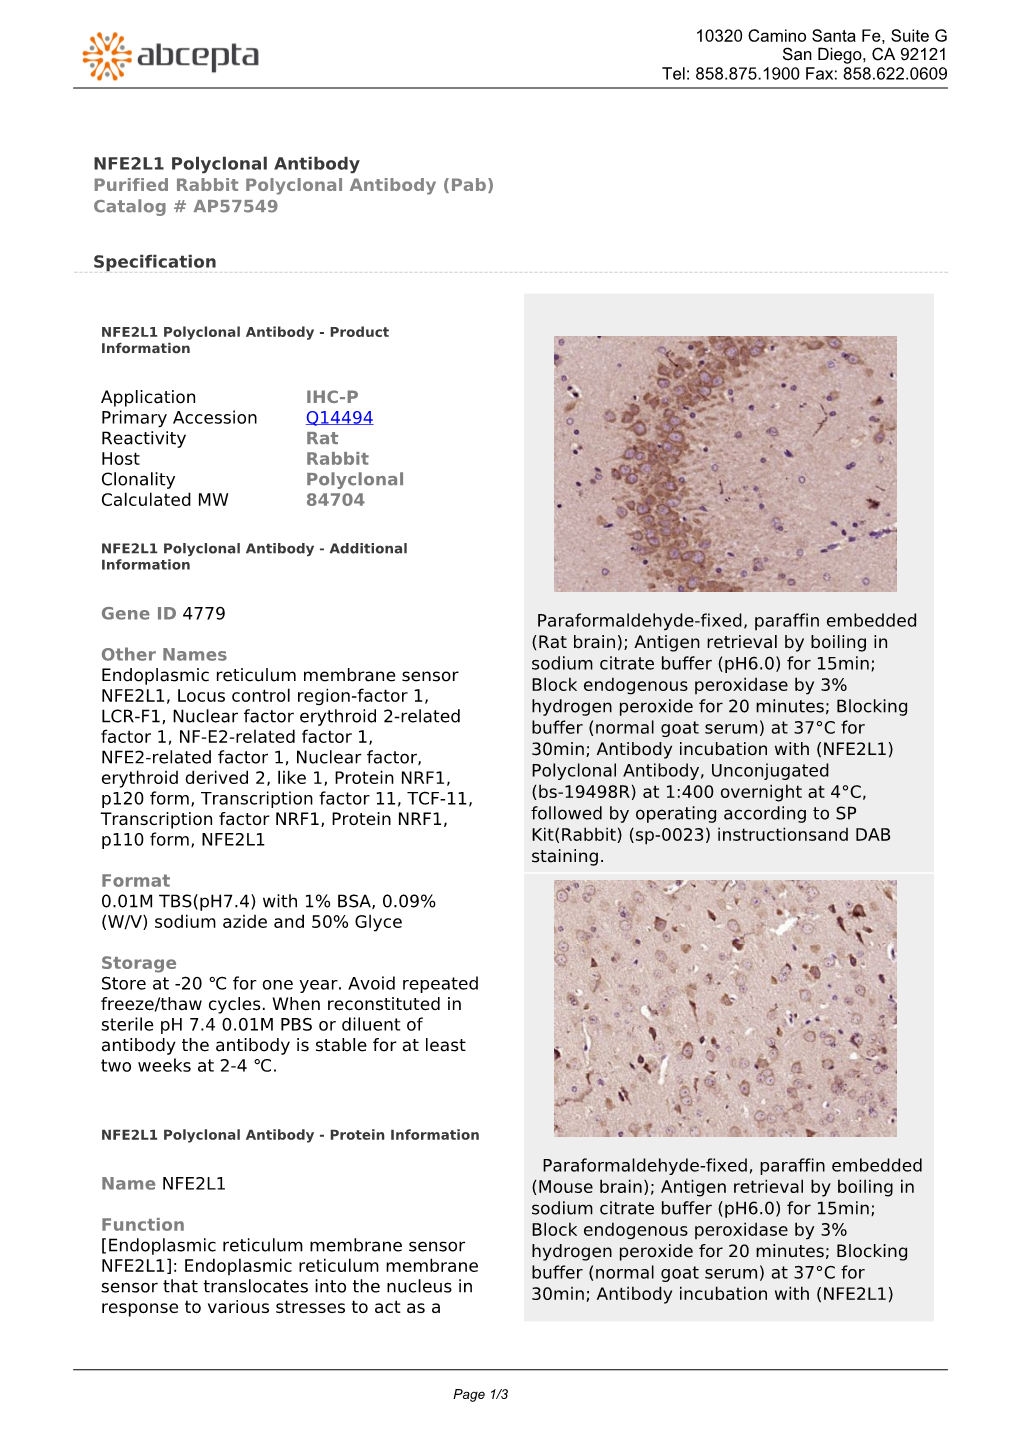 NFE2L1 Polyclonal Antibody Purified Rabbit Polyclonal Antibody (Pab) Catalog # AP57549